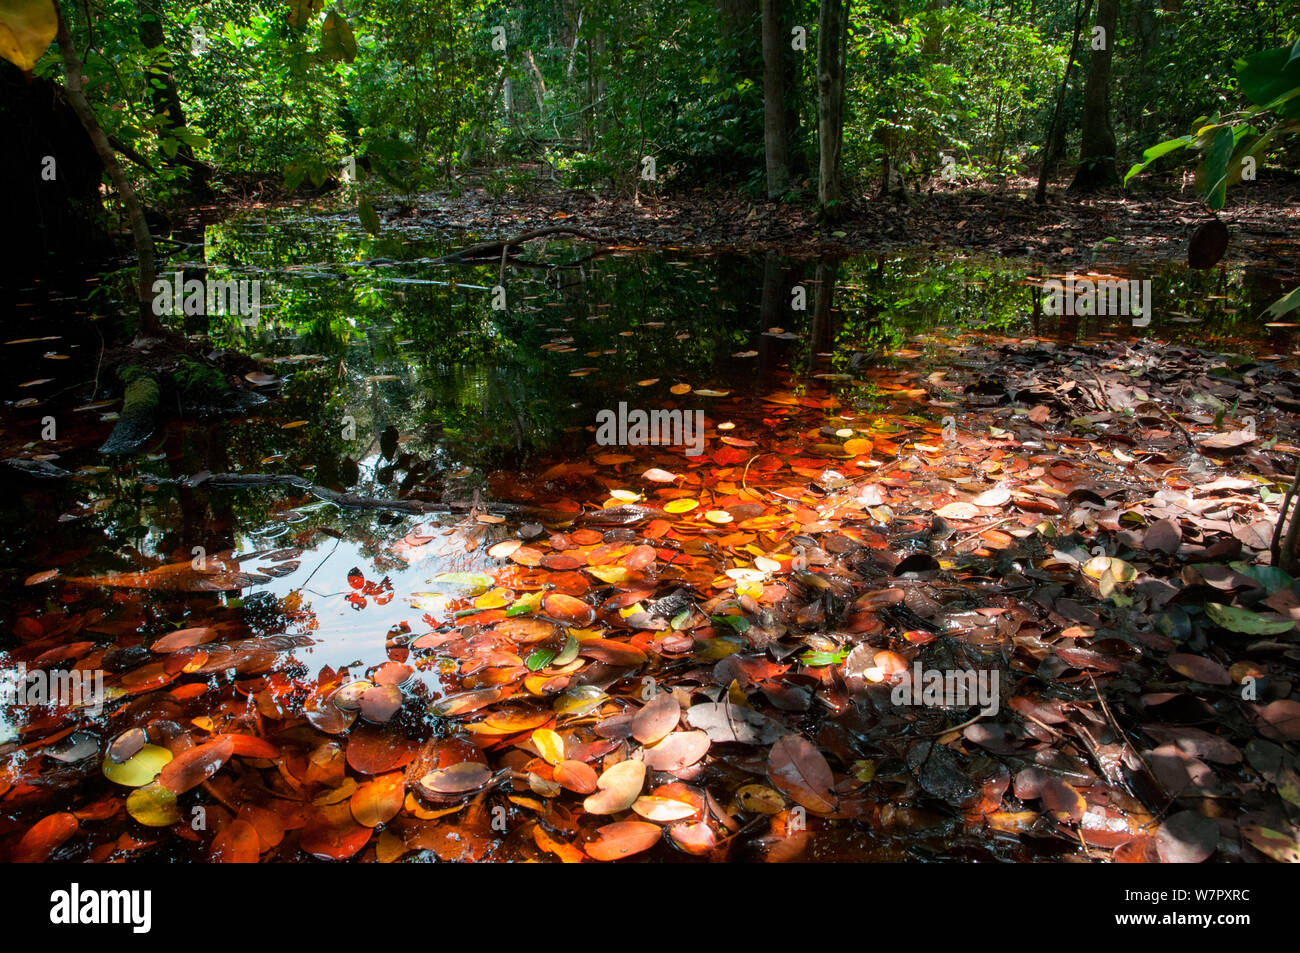 Bosque inundado, Parque Nacional Loango, Gabón. Fotografía tomada en la ubicación de "África" de la serie de la BBC, en enero de 2011. Foto de stock